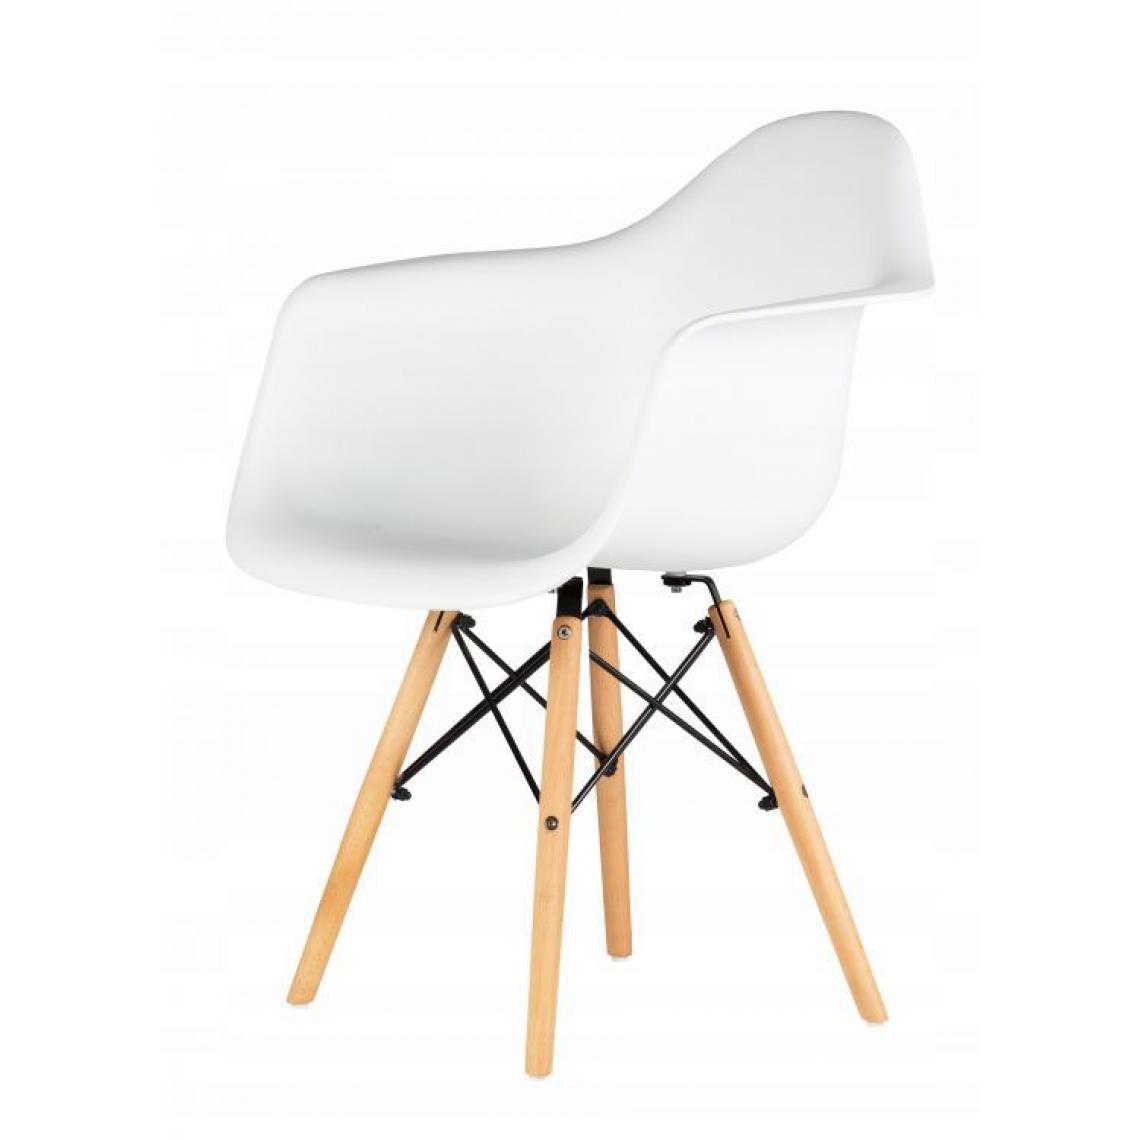 Hucoco - MSTORE - Lot de 4 chaises style moderne salon/chambre - 82x40x40 - Pieds en bois - Blanc - Chaises